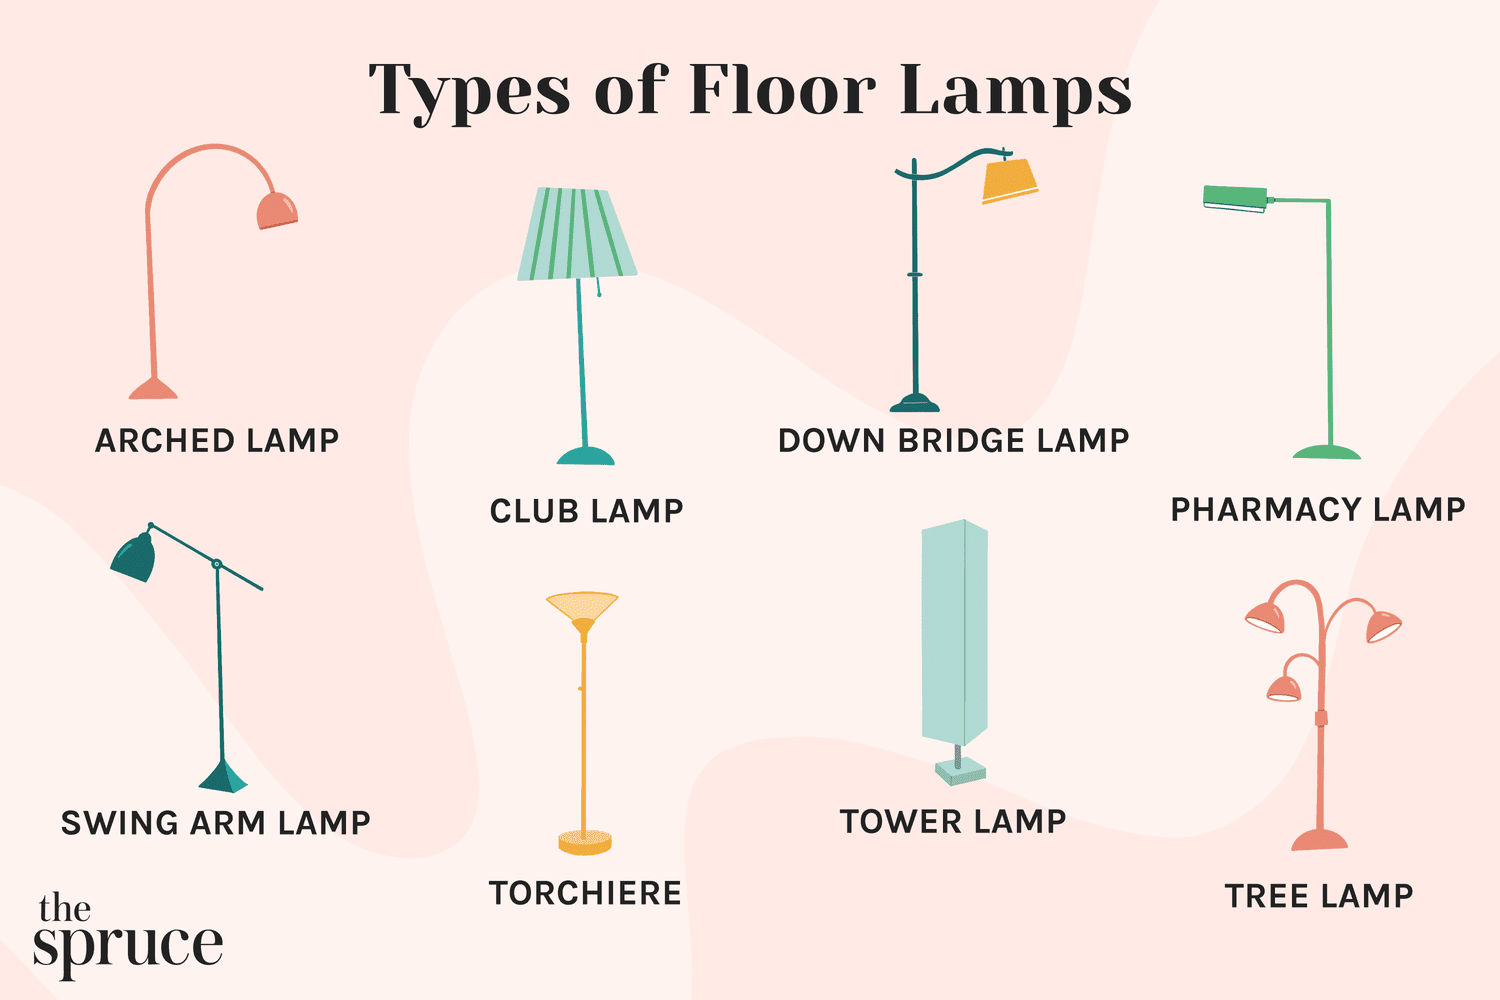 Ilustração mostrando diferentes tipos de lâmpadas de assoalho